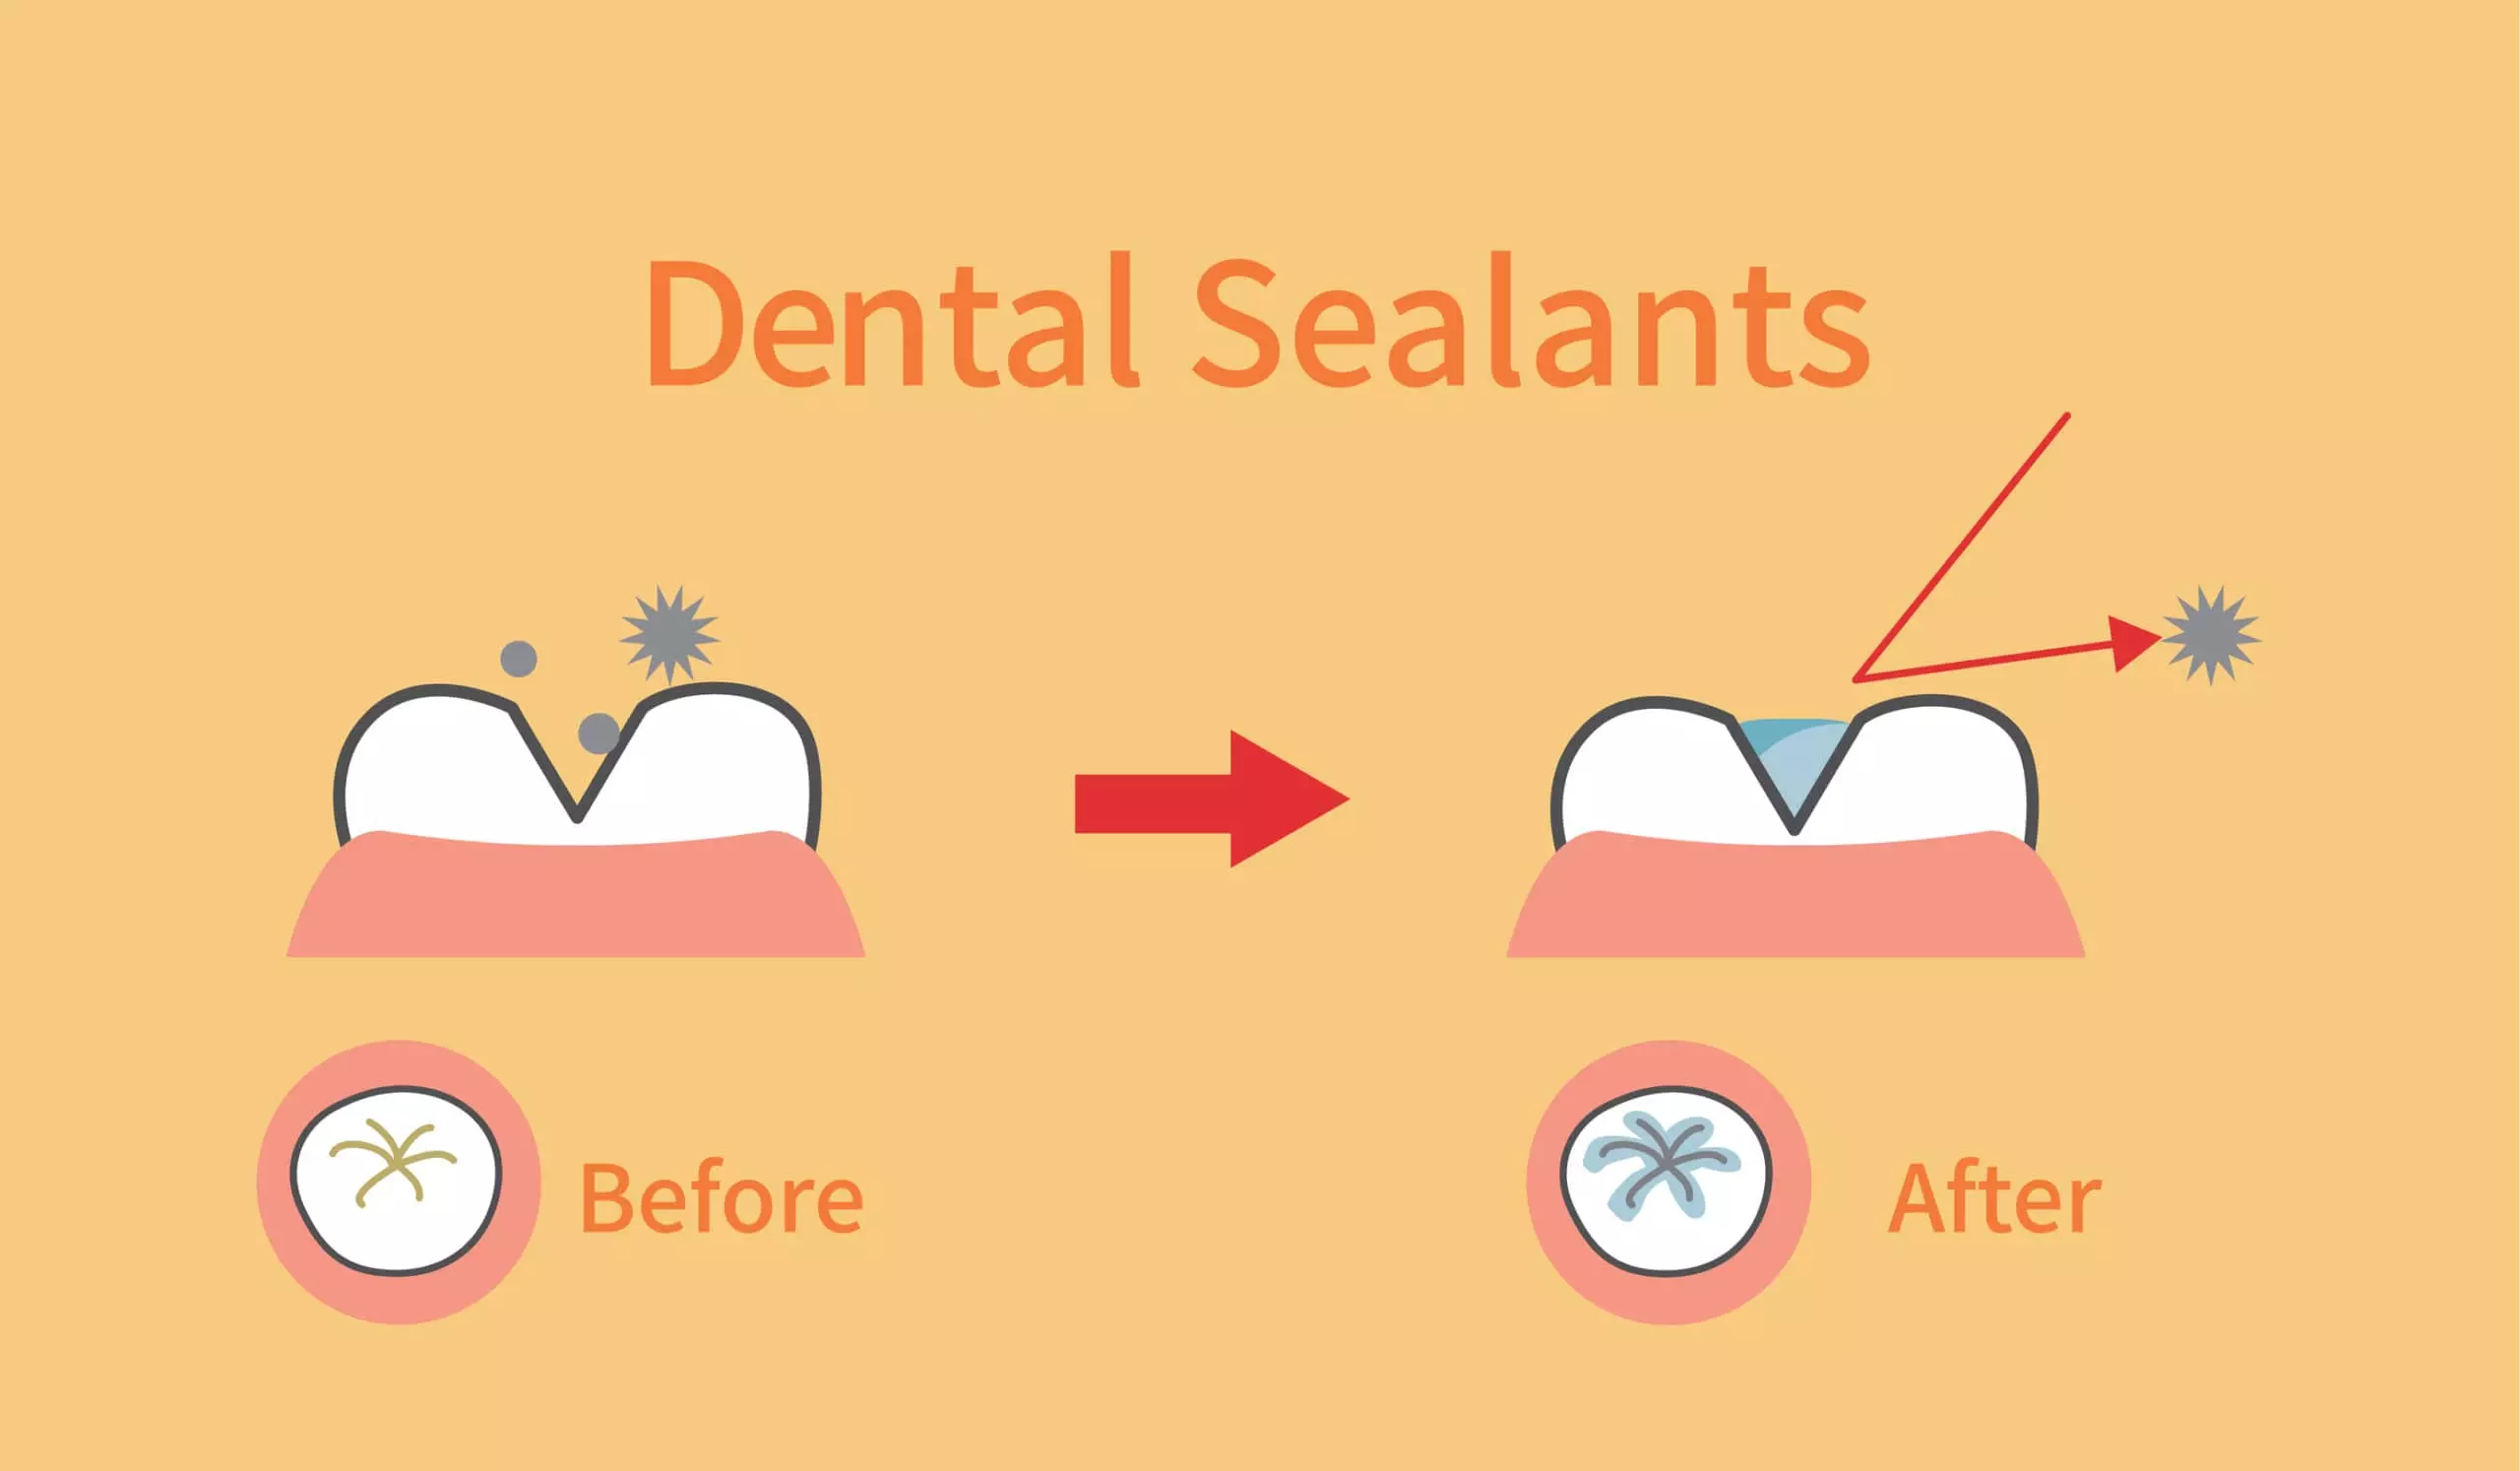 Dental sealants for children